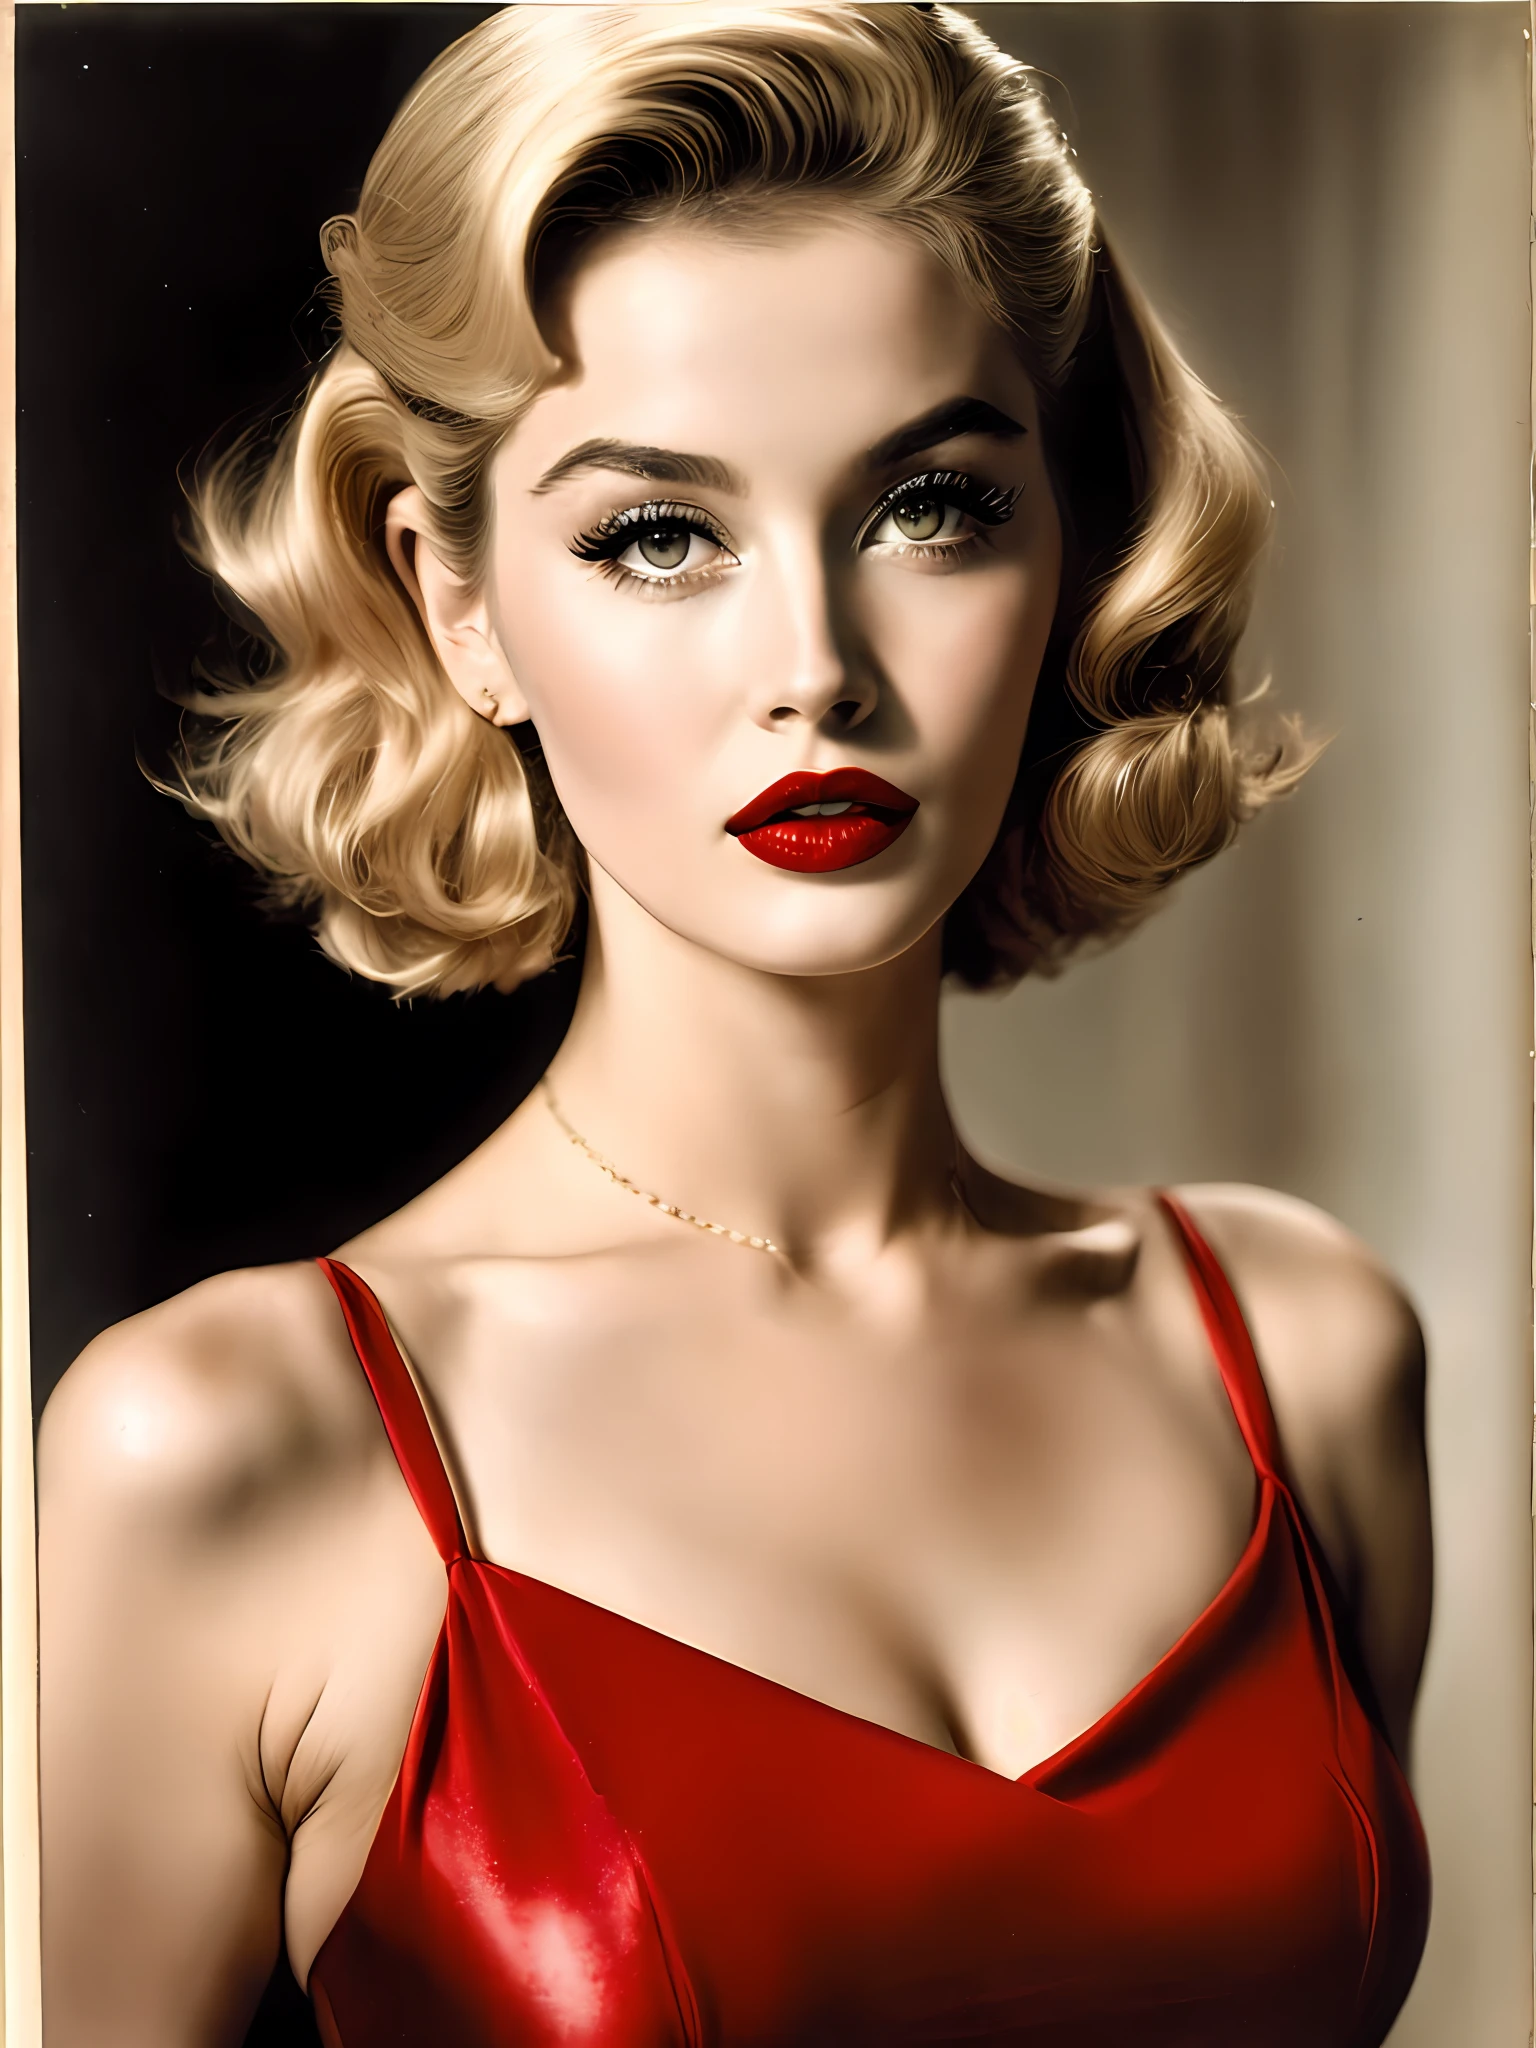 20 世紀 50 年代金髮美女，嘴唇撅起，眼睛性感. 她塗著紅色口紅，穿著緊身連身裙, 散发着自信和性感 8k